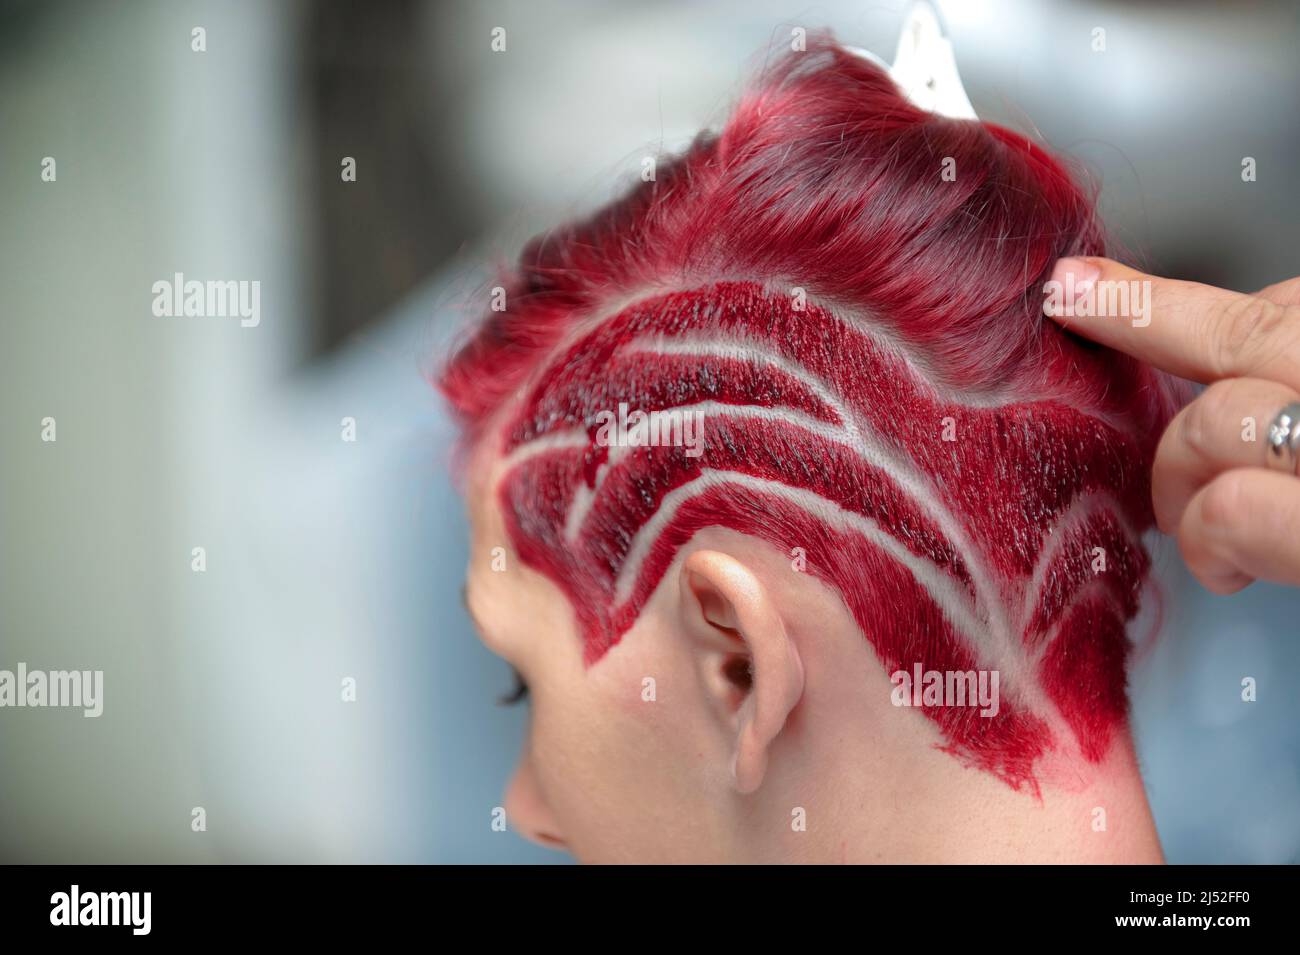 Friseursalon, der an einem roten Haarschnitt arbeitet Stockfoto